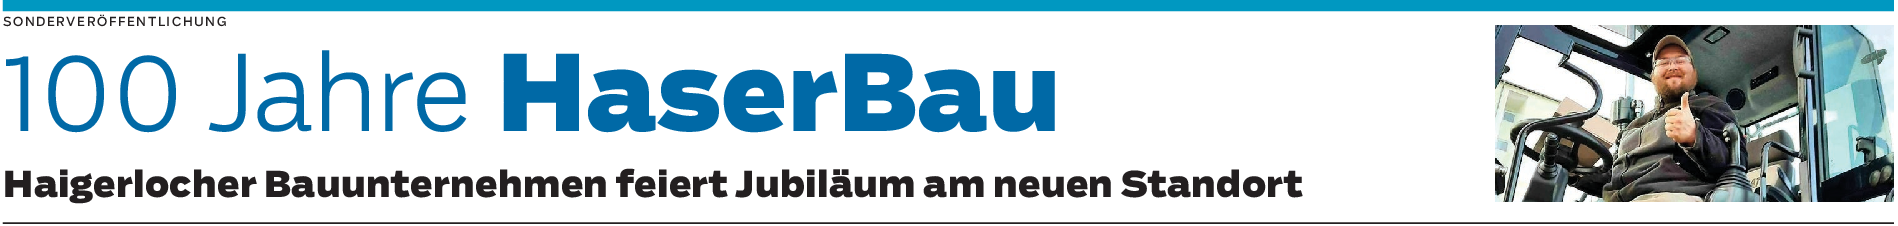 HaserBau in Haigerloch: Fundiertes Wissen in Sachen Bau